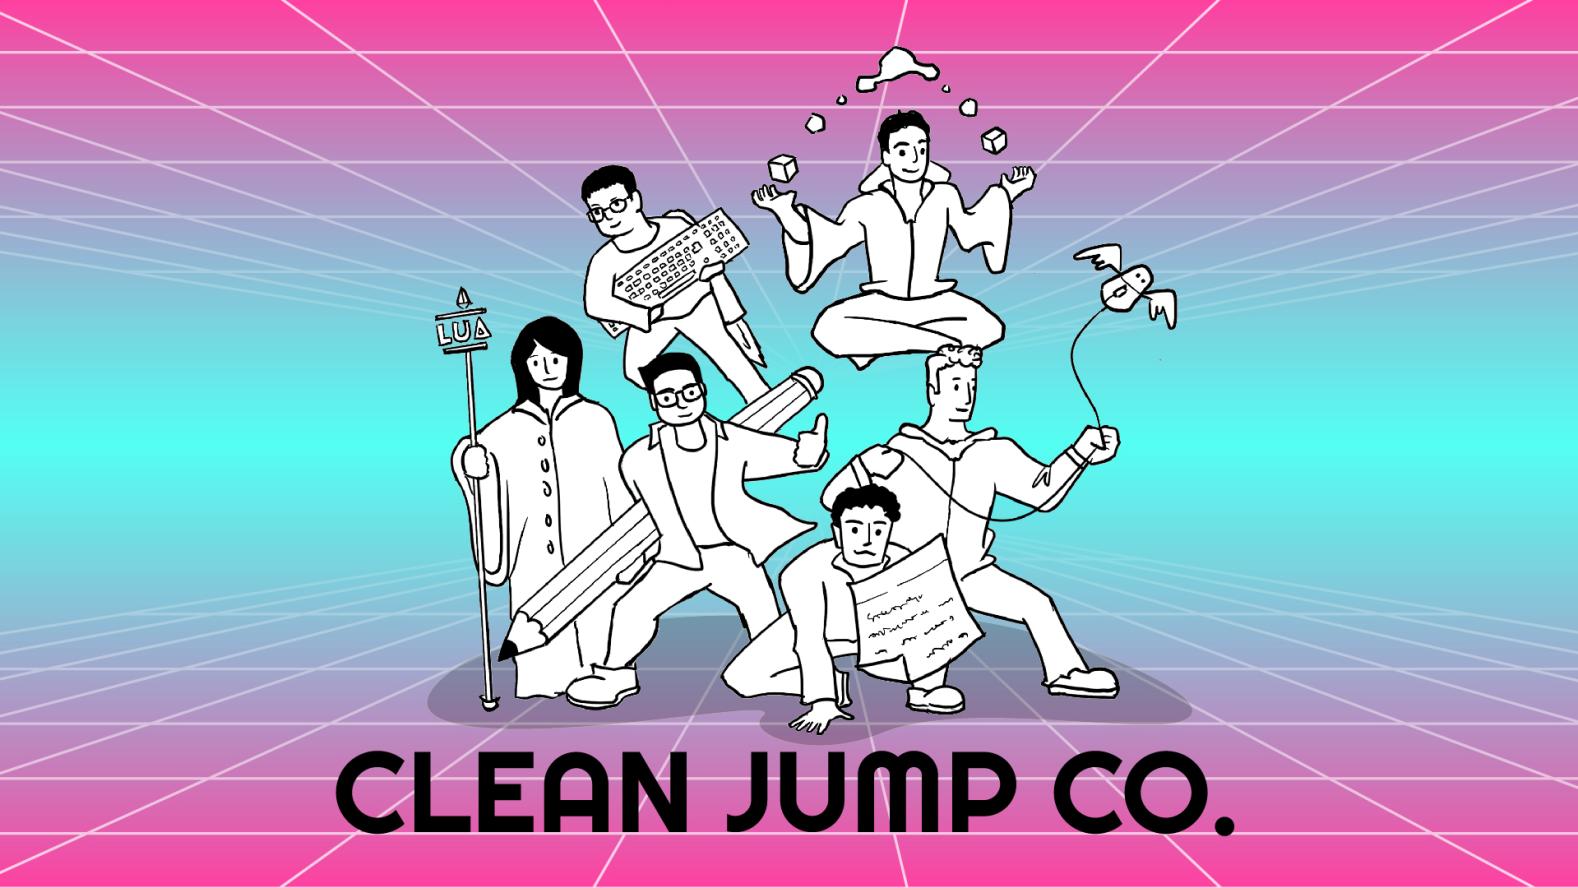 Clean Jump Co.jpeg